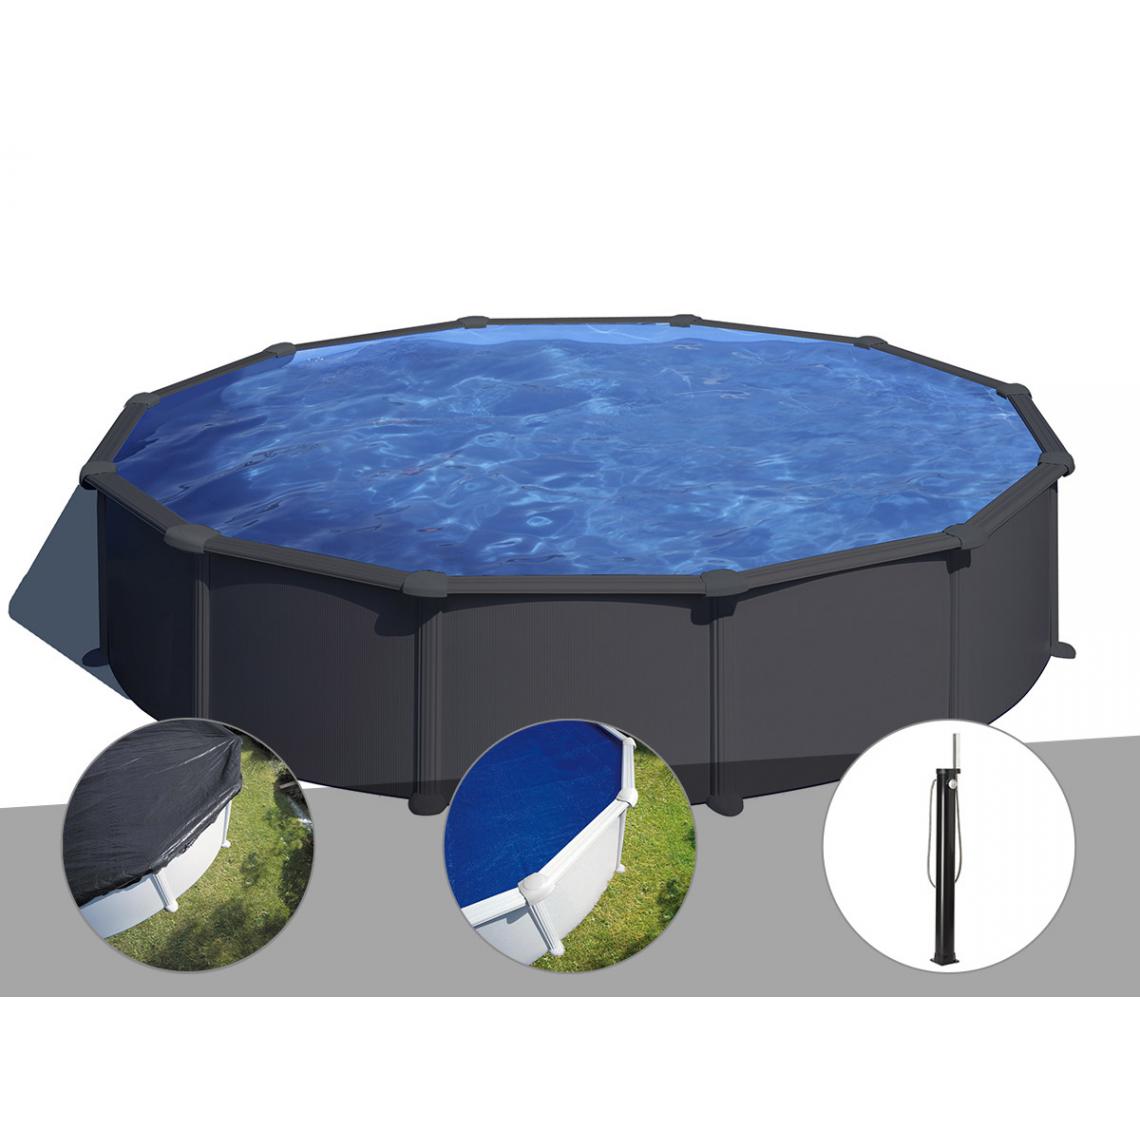 Gre - Kit piscine acier gris anthracite Gré Juni ronde 5,70 x 1,32 m + Bâche d'hivernage + Bâche à bulles + Douche - Piscines acier et résine